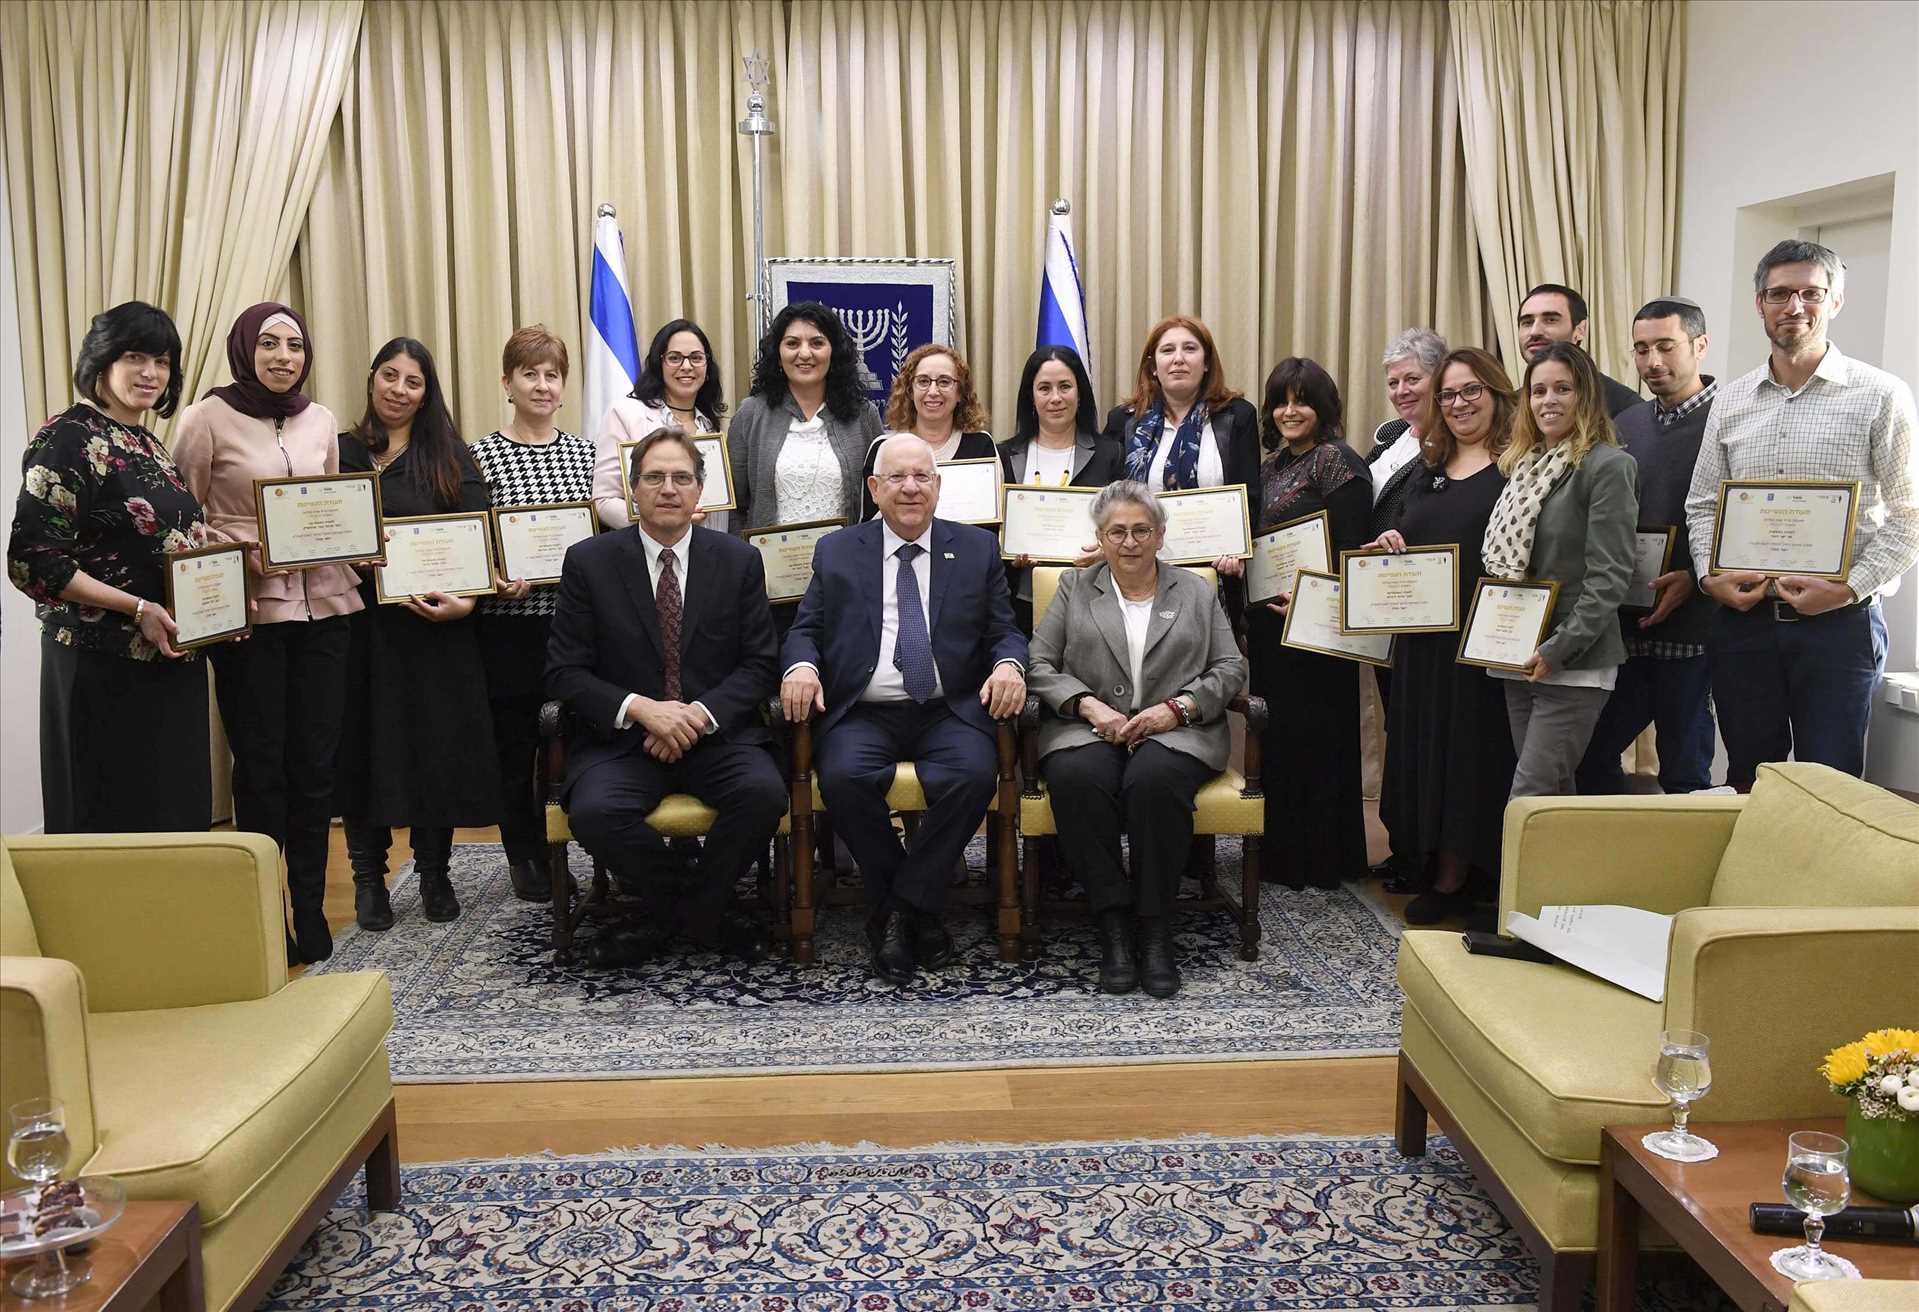 Israel’s President Honors Teachers